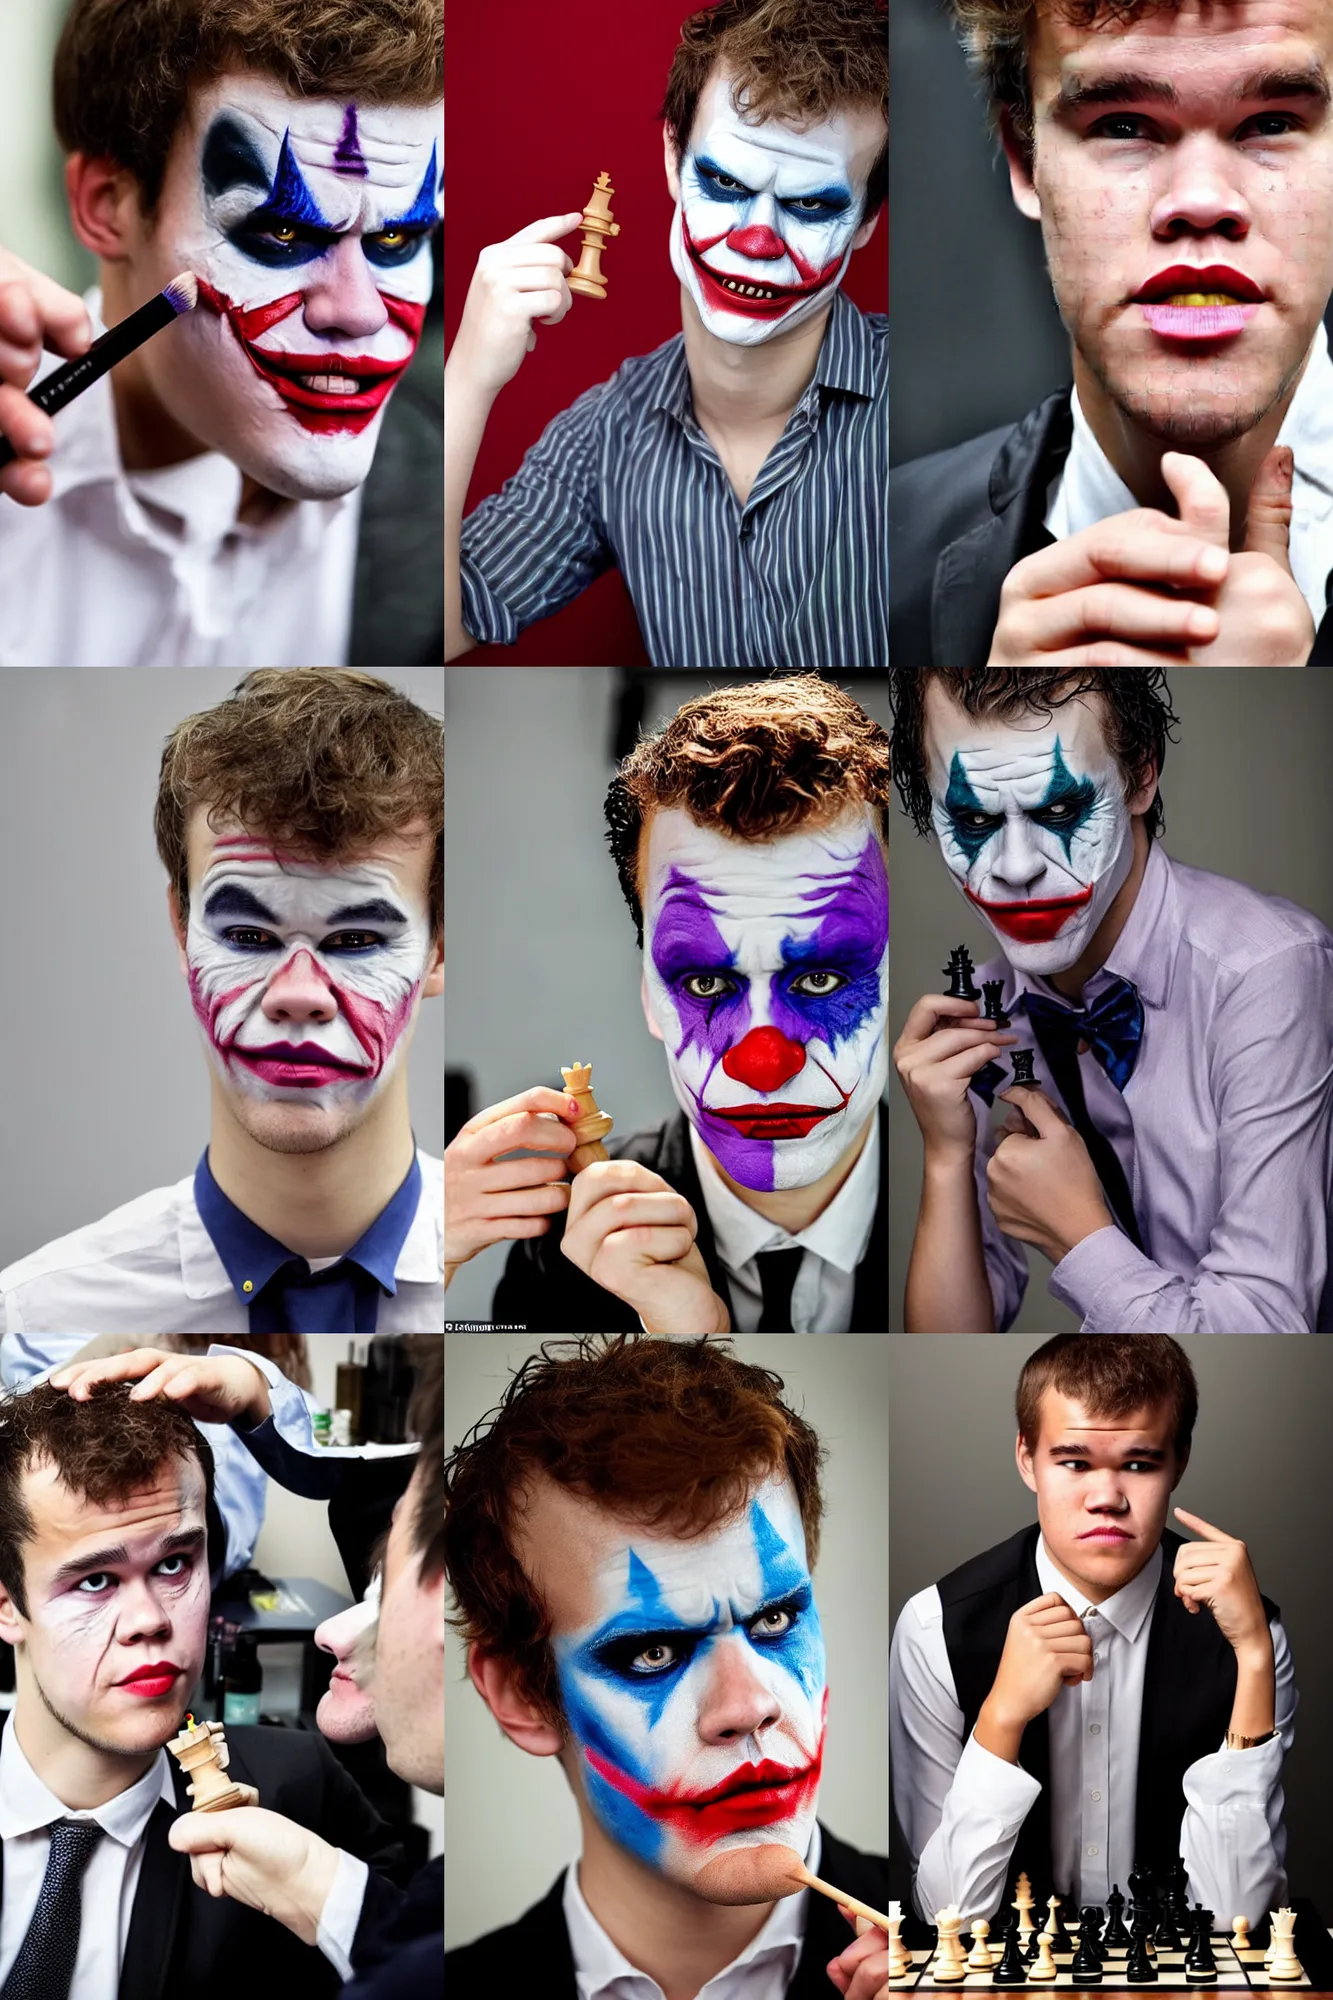 Prompt: Chess champion Magnus Carlsen wearing makeup as the Joker